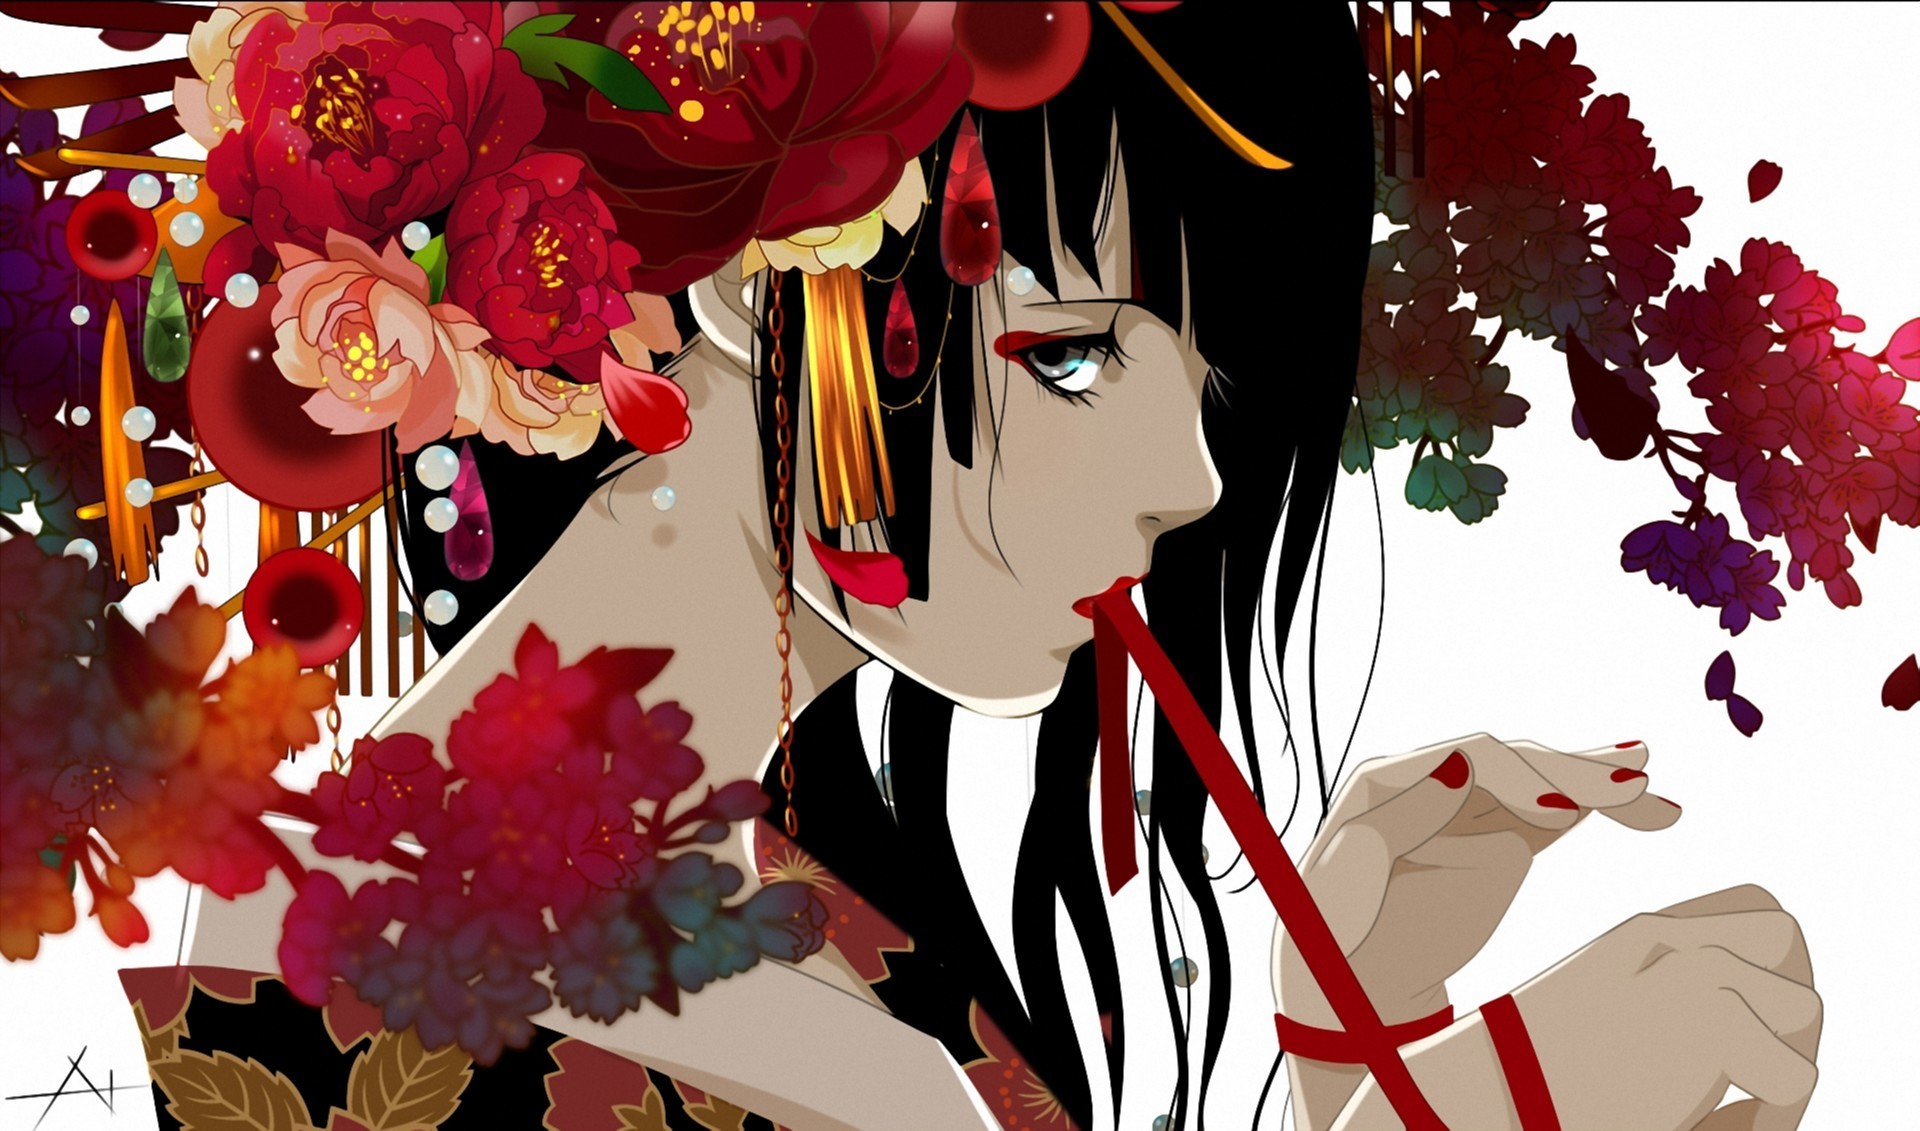 Anime Flower by FantasyArtist889 on DeviantArt